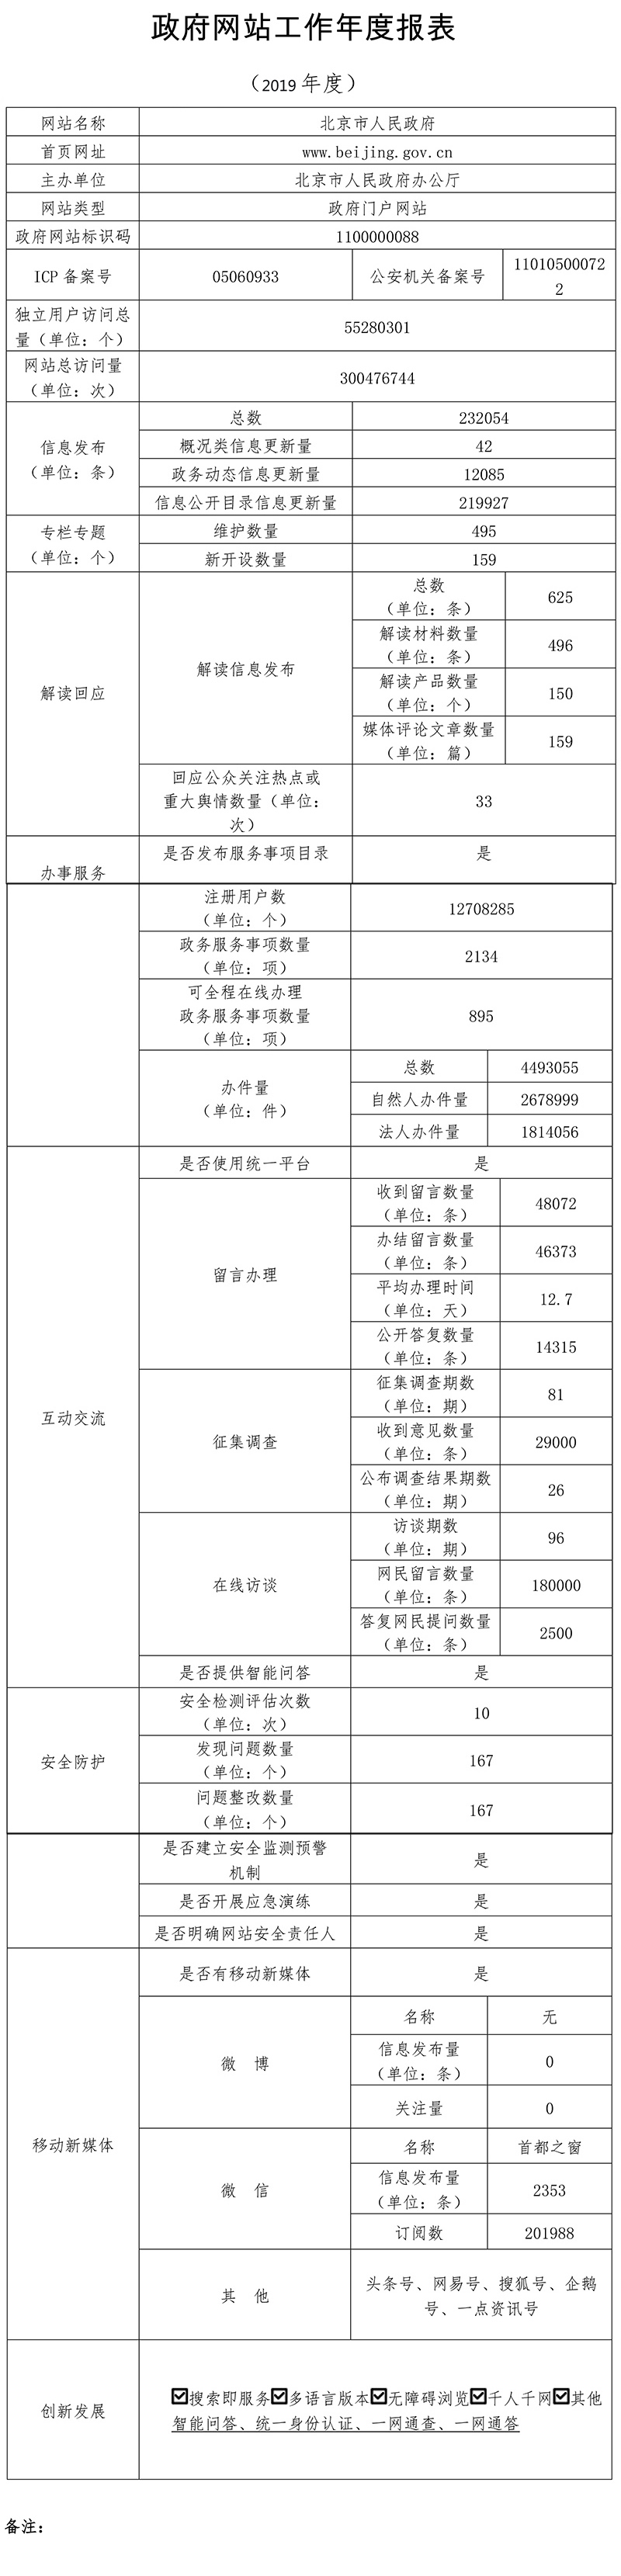 北京市人民政府門戶網站2019年度工作報表